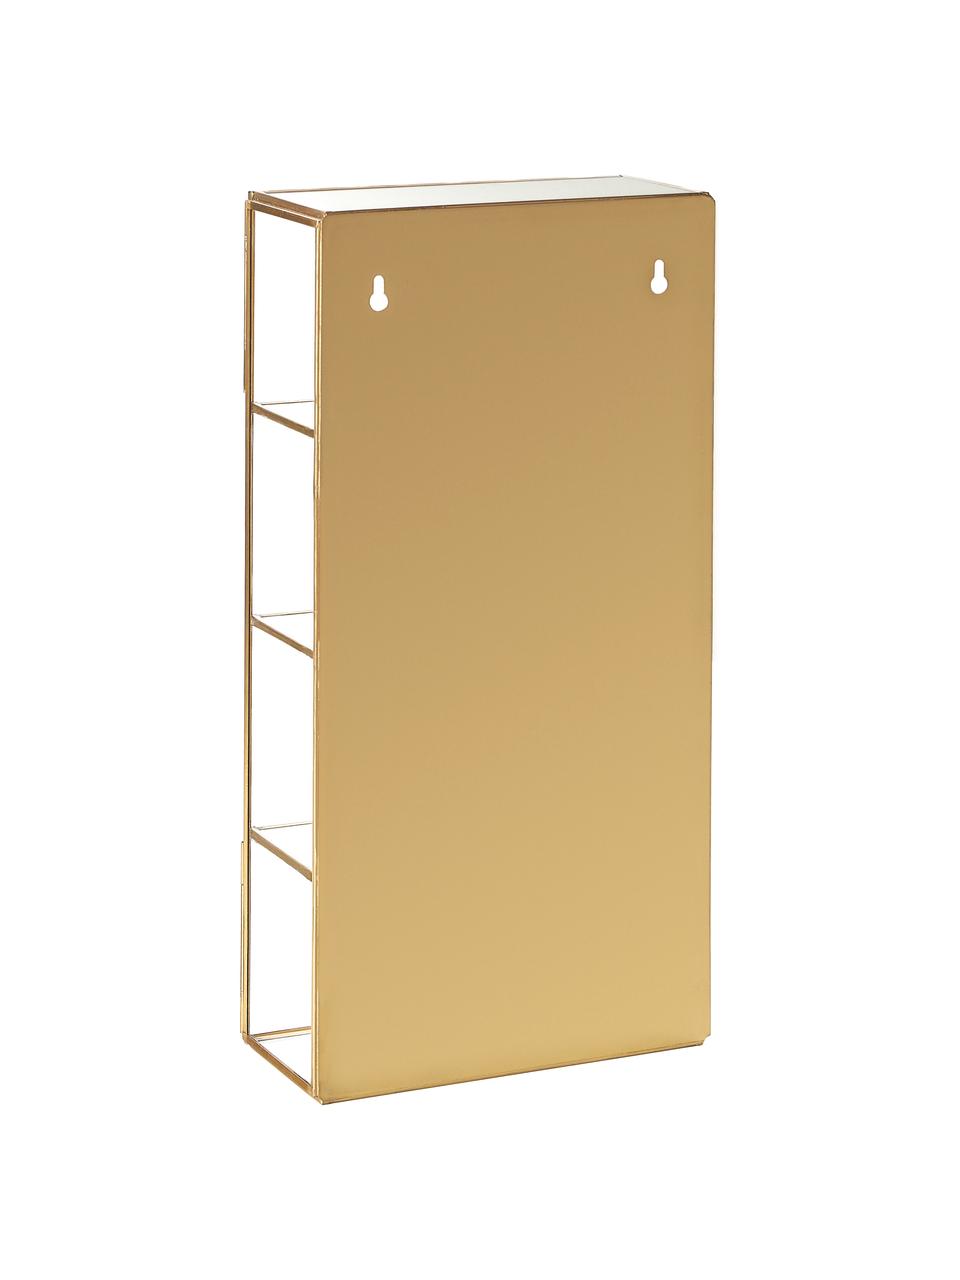 Metall-Wandregal Ada in Gold mit Glasablageflächen und Glastür, Rahmen: Metall, vermessingt, Goldfarben, B 20 x H 40 cm